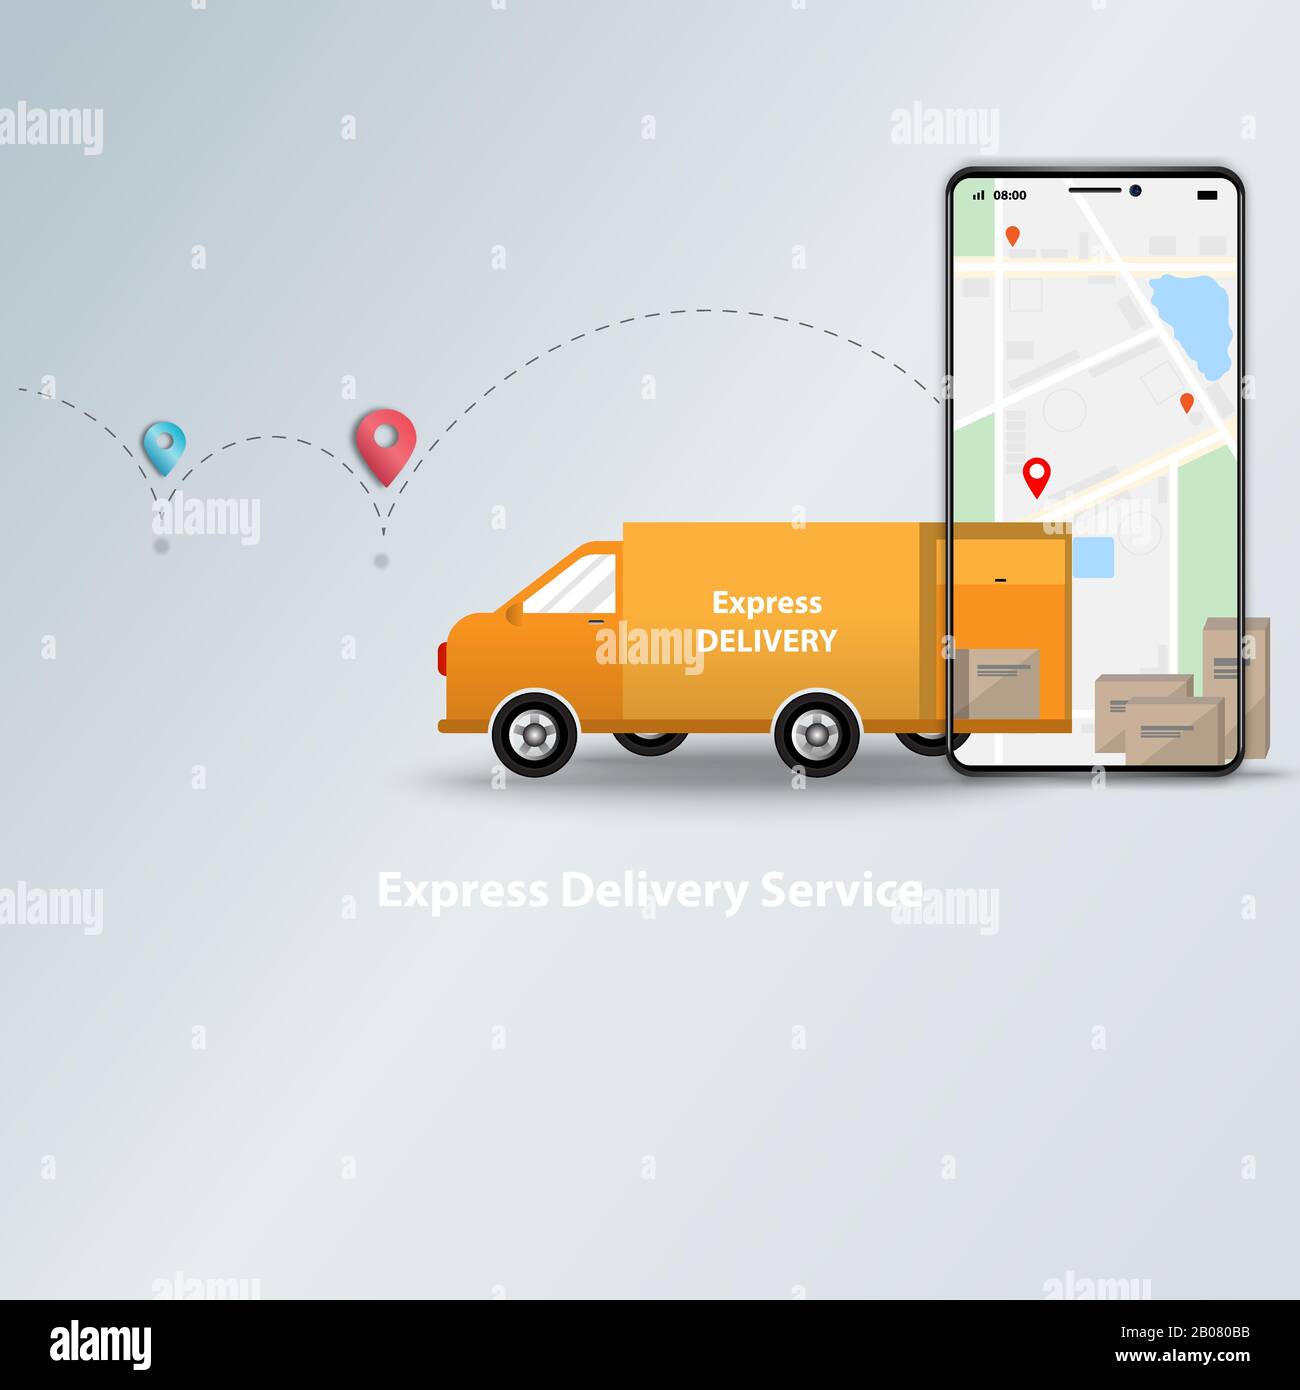 App di servizio di consegna rapida e tracciamento degli ordini online su concetto mobile. Logistica di furgone consegna e telefono cellulare con mappa in background. Illustrazione Vettoriale